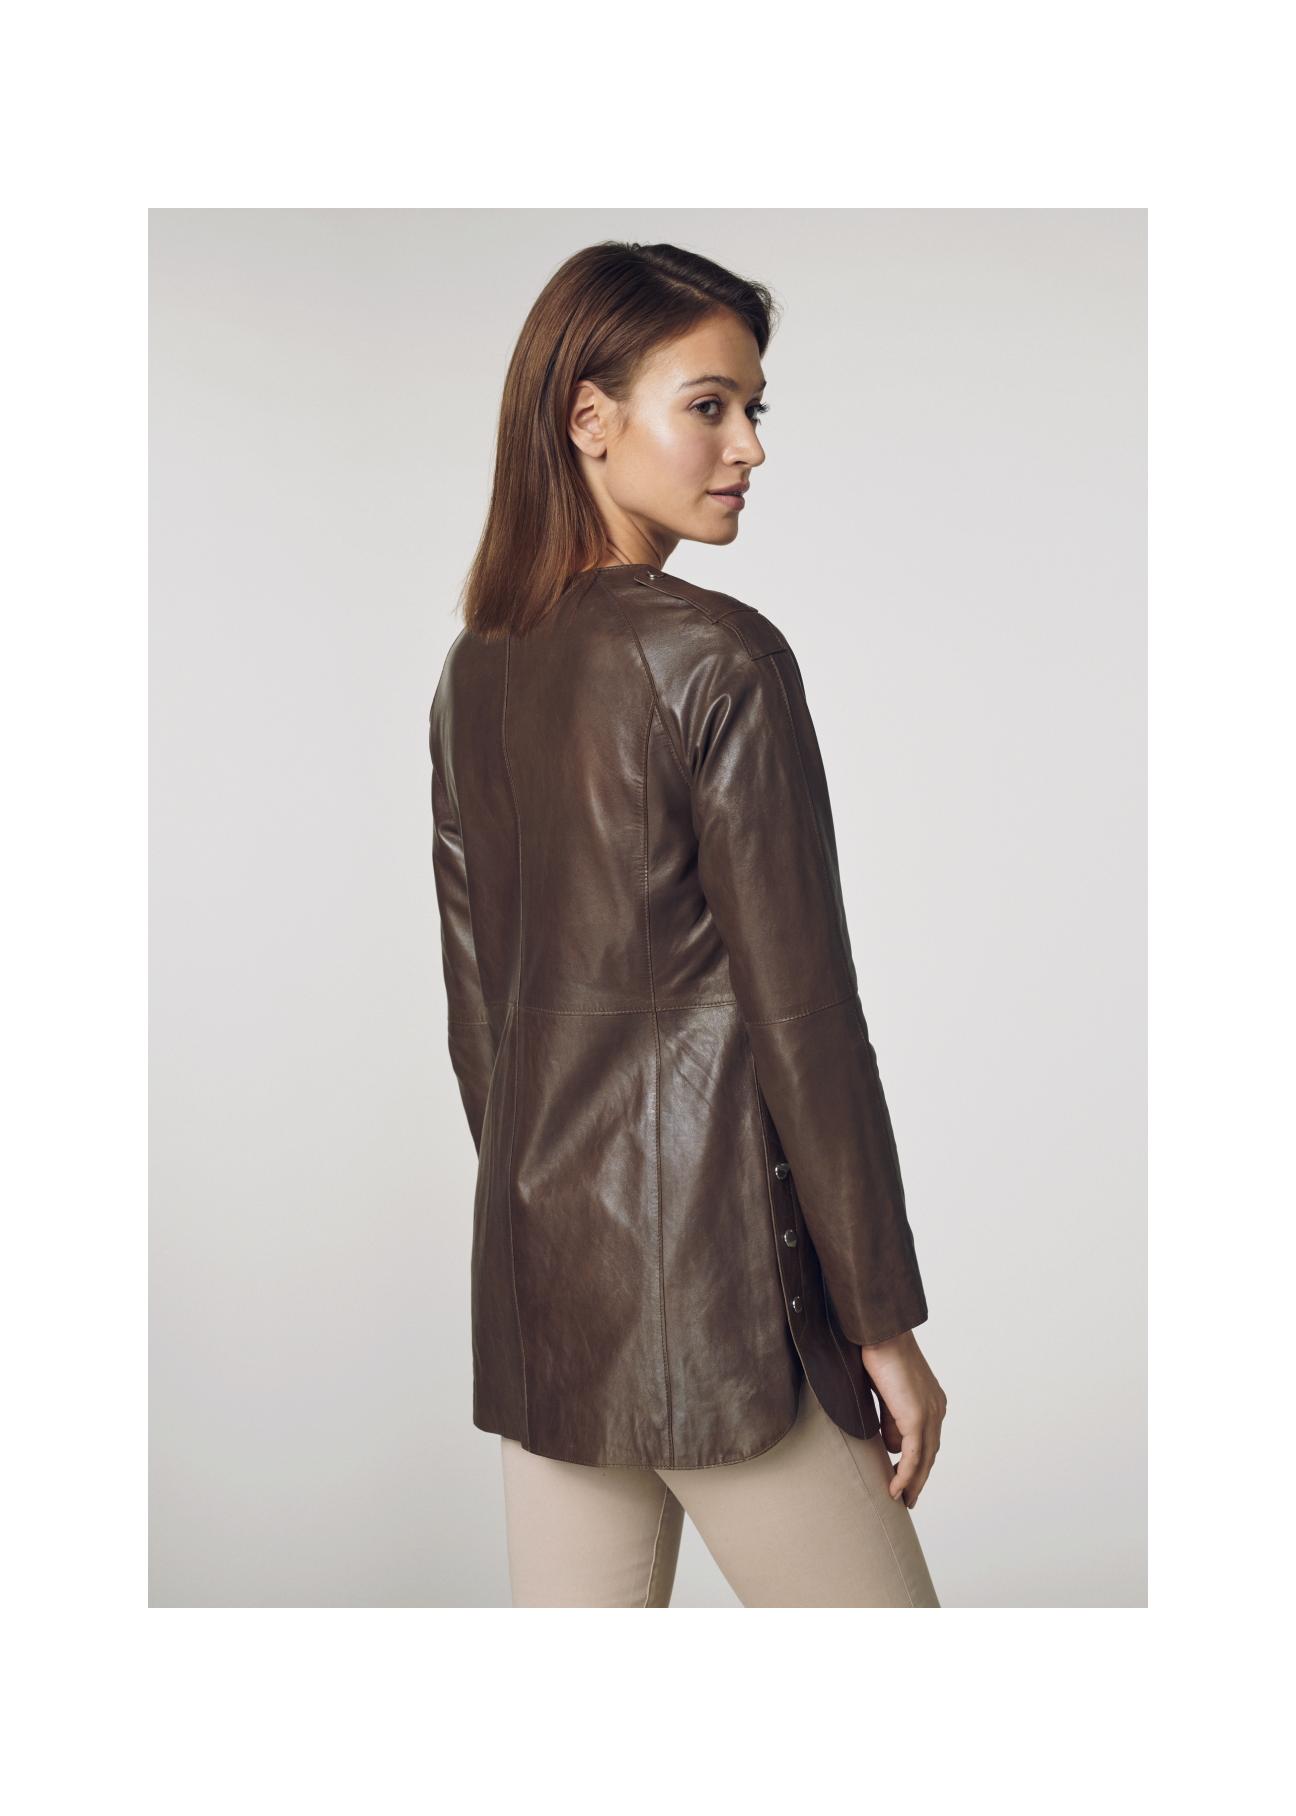 Skórzany brązowy płaszcz damski KURDS-0165-1100(W21)